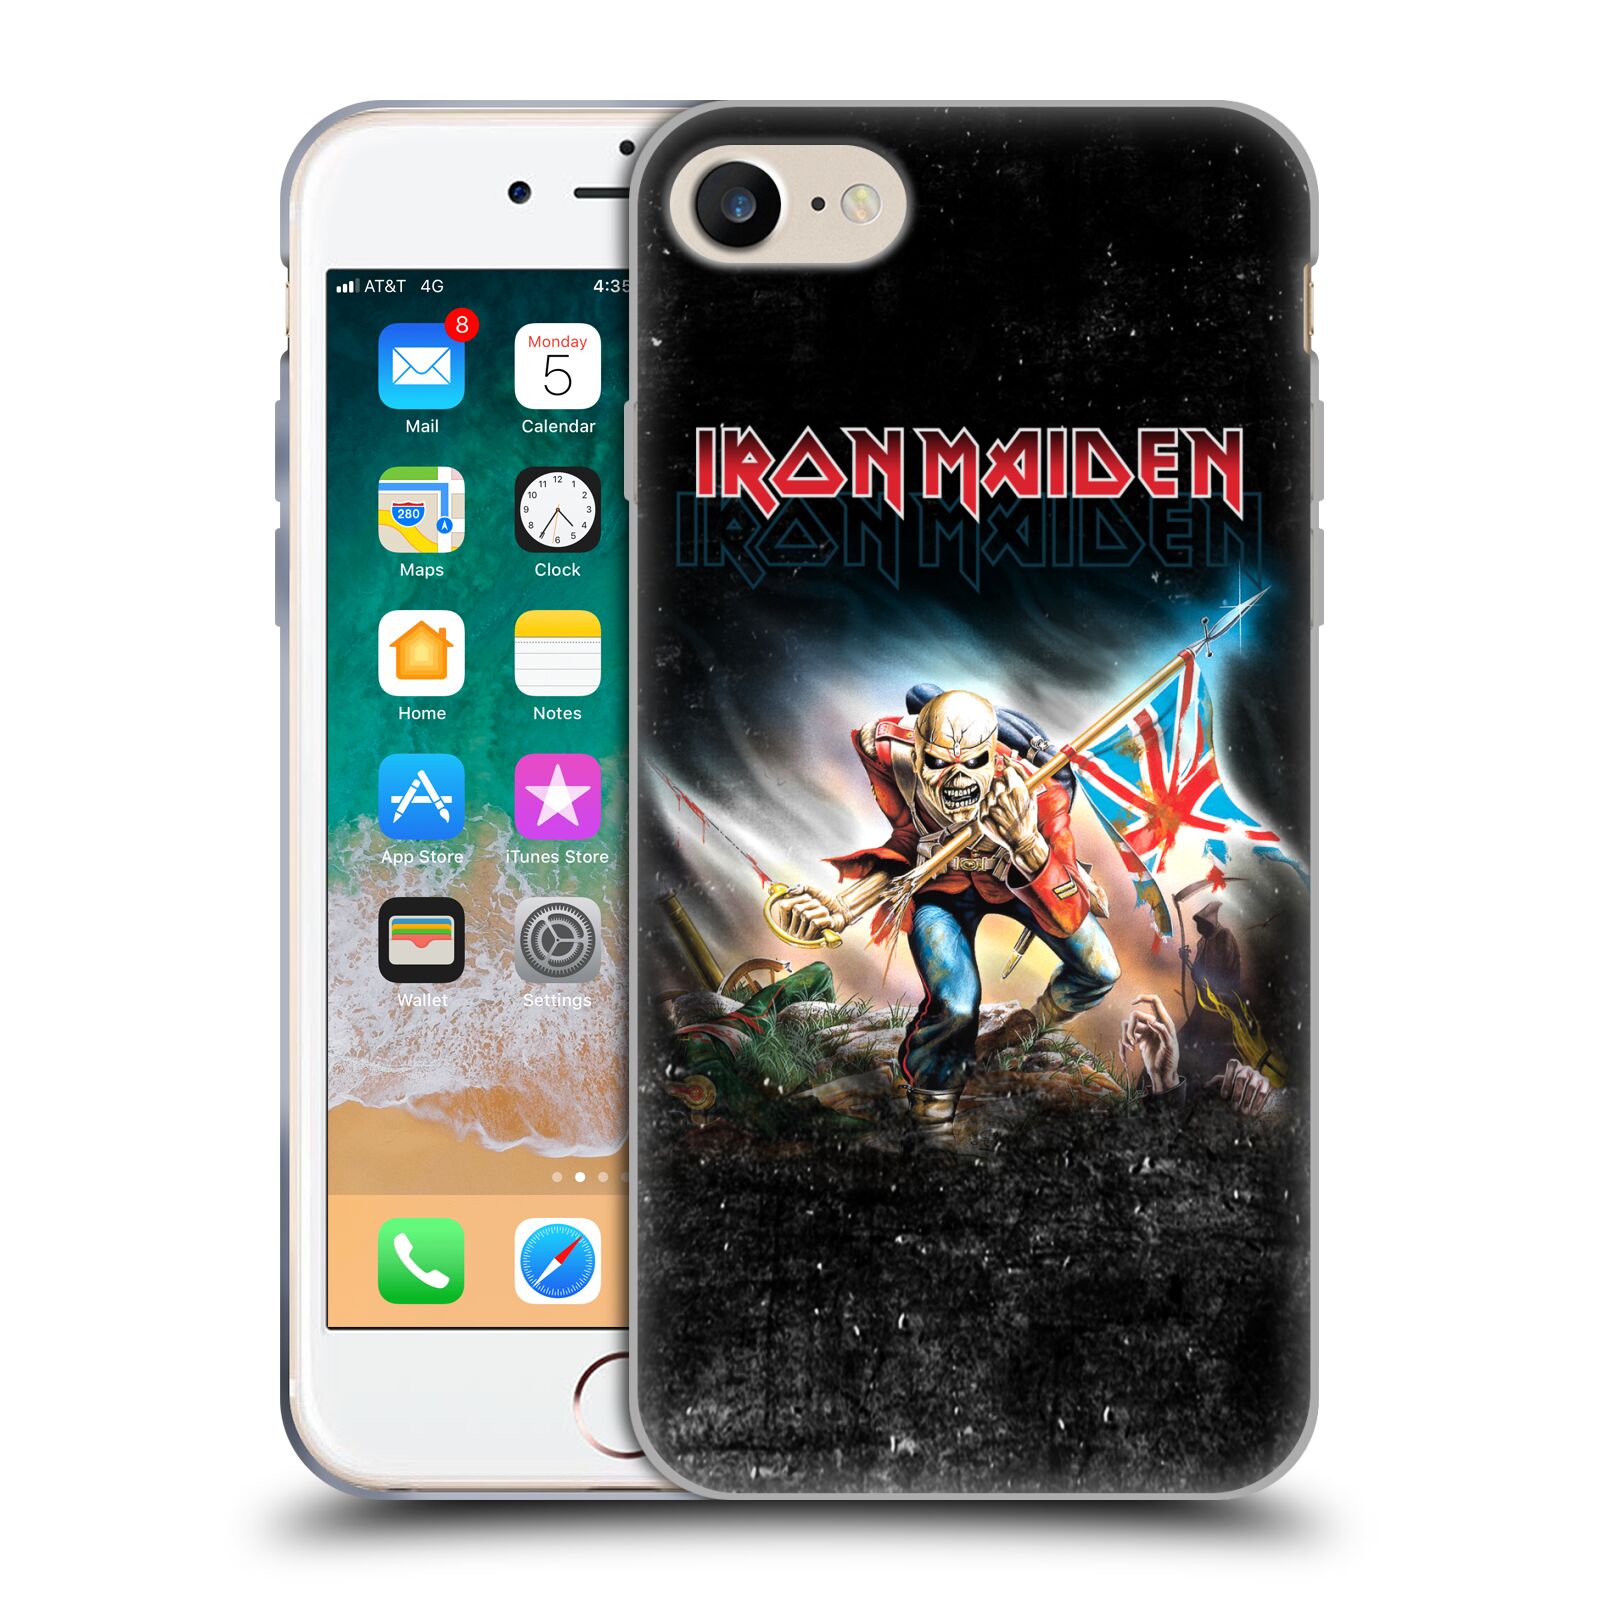 Silikonové pouzdro na mobil Apple iPhone 7 HEAD CASE - Iron Maiden - Trooper 2016 (Silikonový kryt či obal na mobilní telefon s licencovaným motivem Iron Maiden Apple iPhone 7)